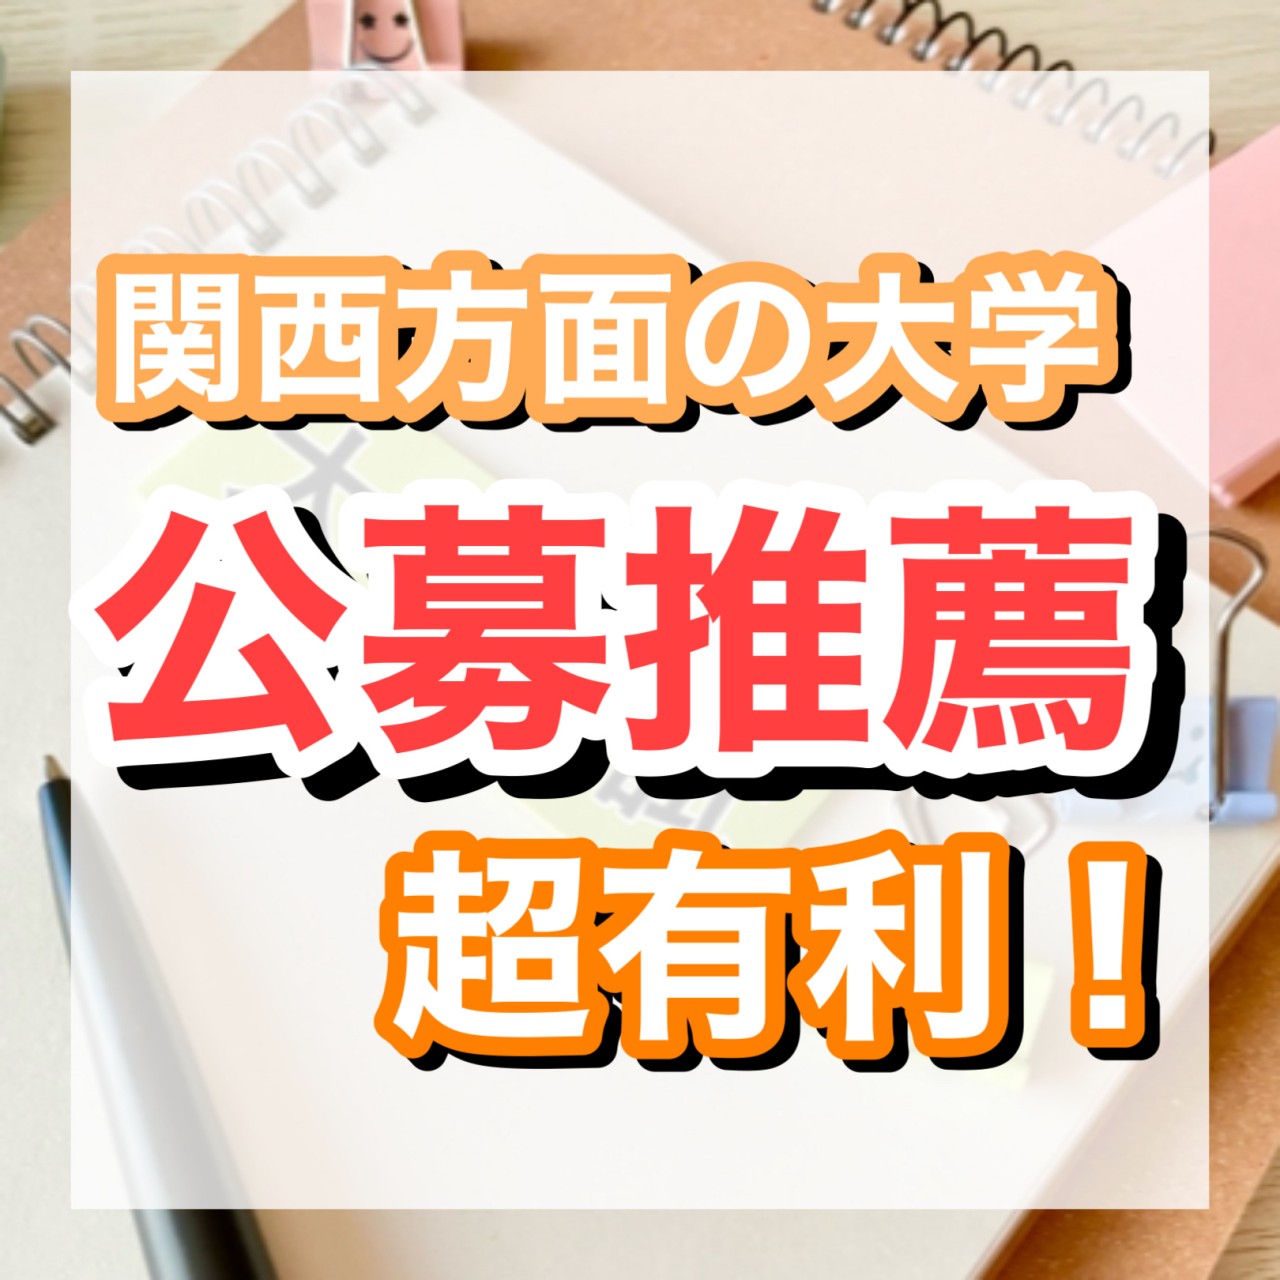 【公募推薦】関西の大学を受ける受験生が得する入試と対策